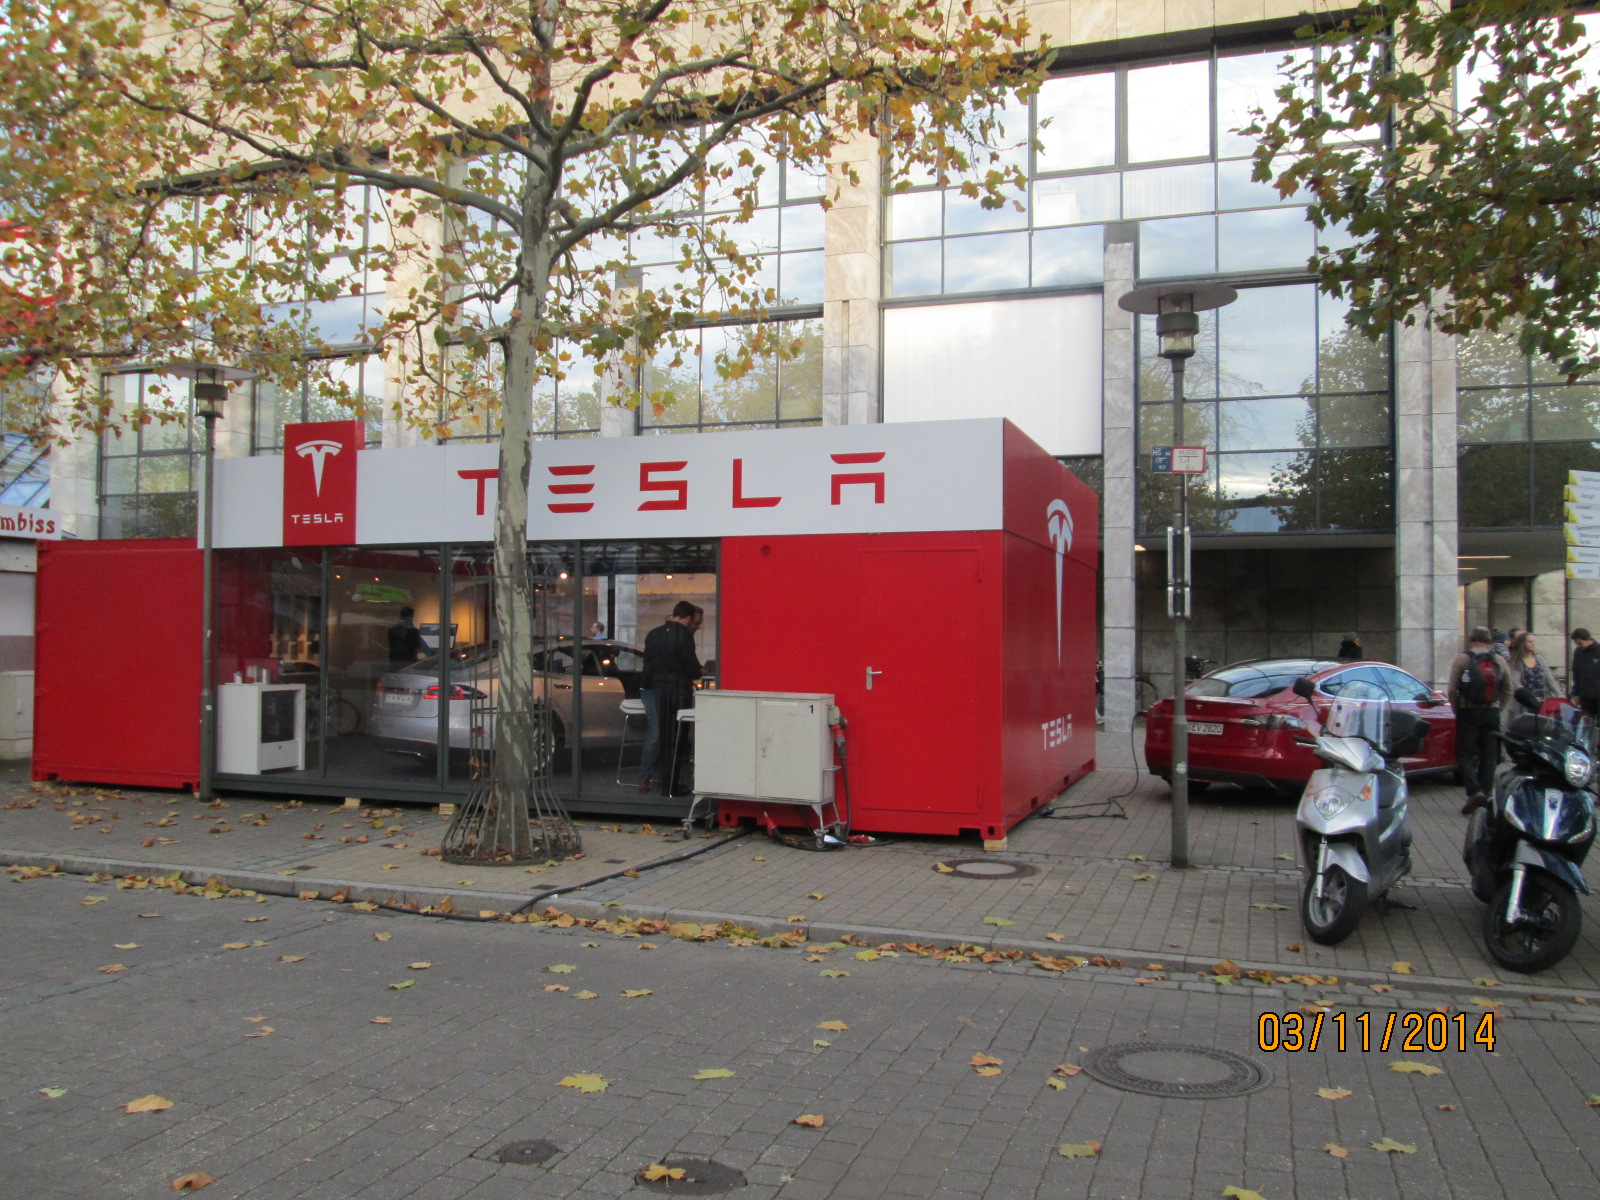 Tesla probefahren in Erlangen